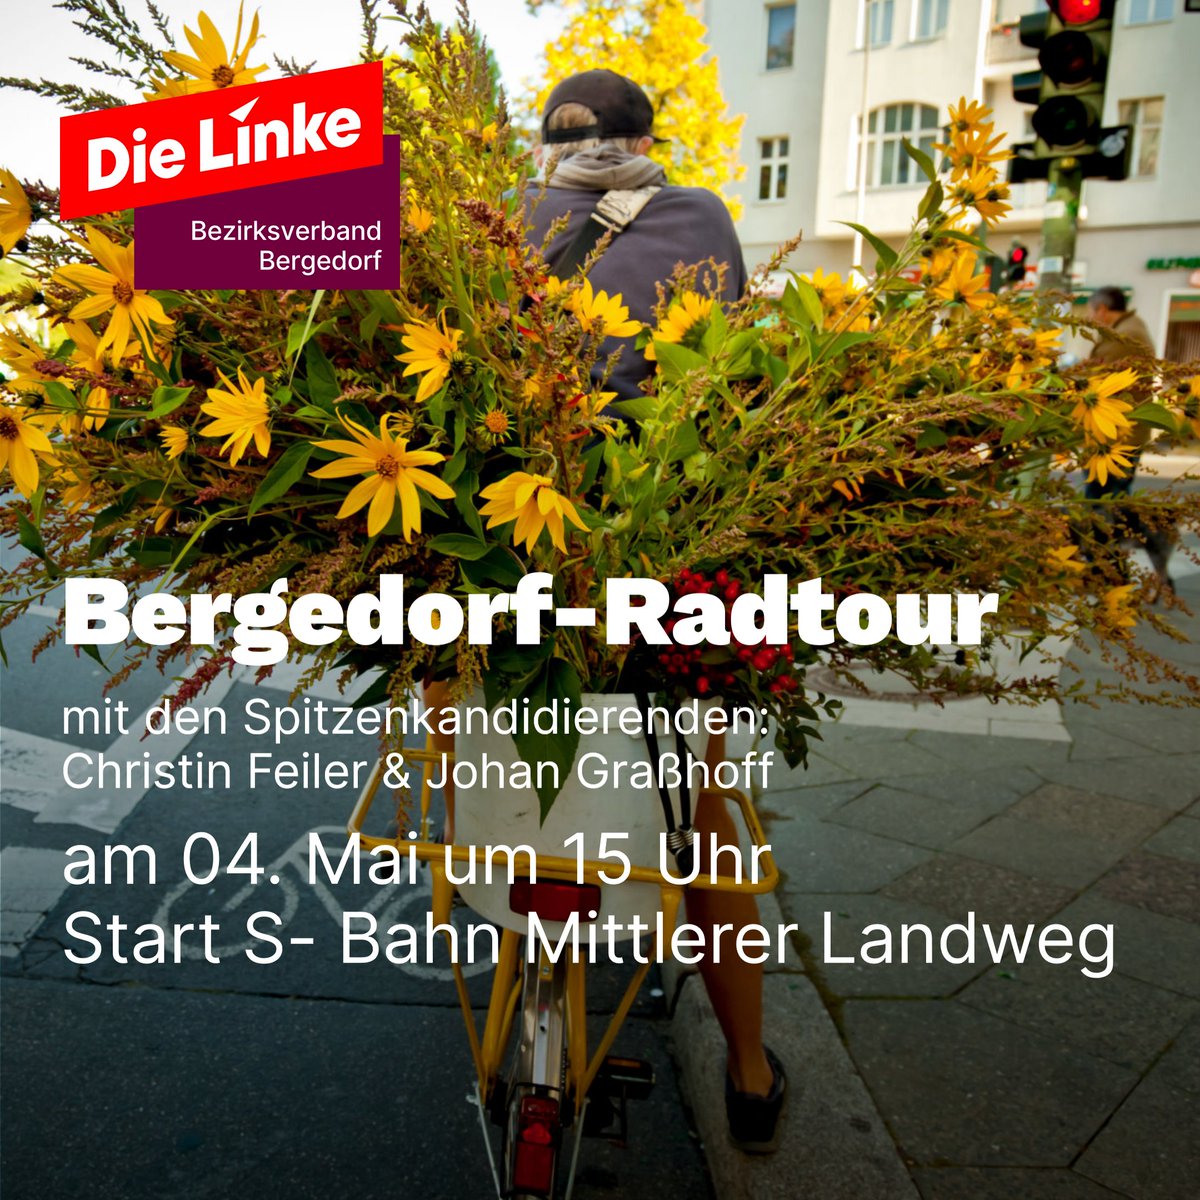 Kommt und radelt mit uns durch den Bezirk 🚴‍♀️🚴‍♂️ 📆 Sa. 04.05 ⏰ 15Uhr 📍 S-Bahn Mittlerer Landweg #Bergedorf100ProzentSozial